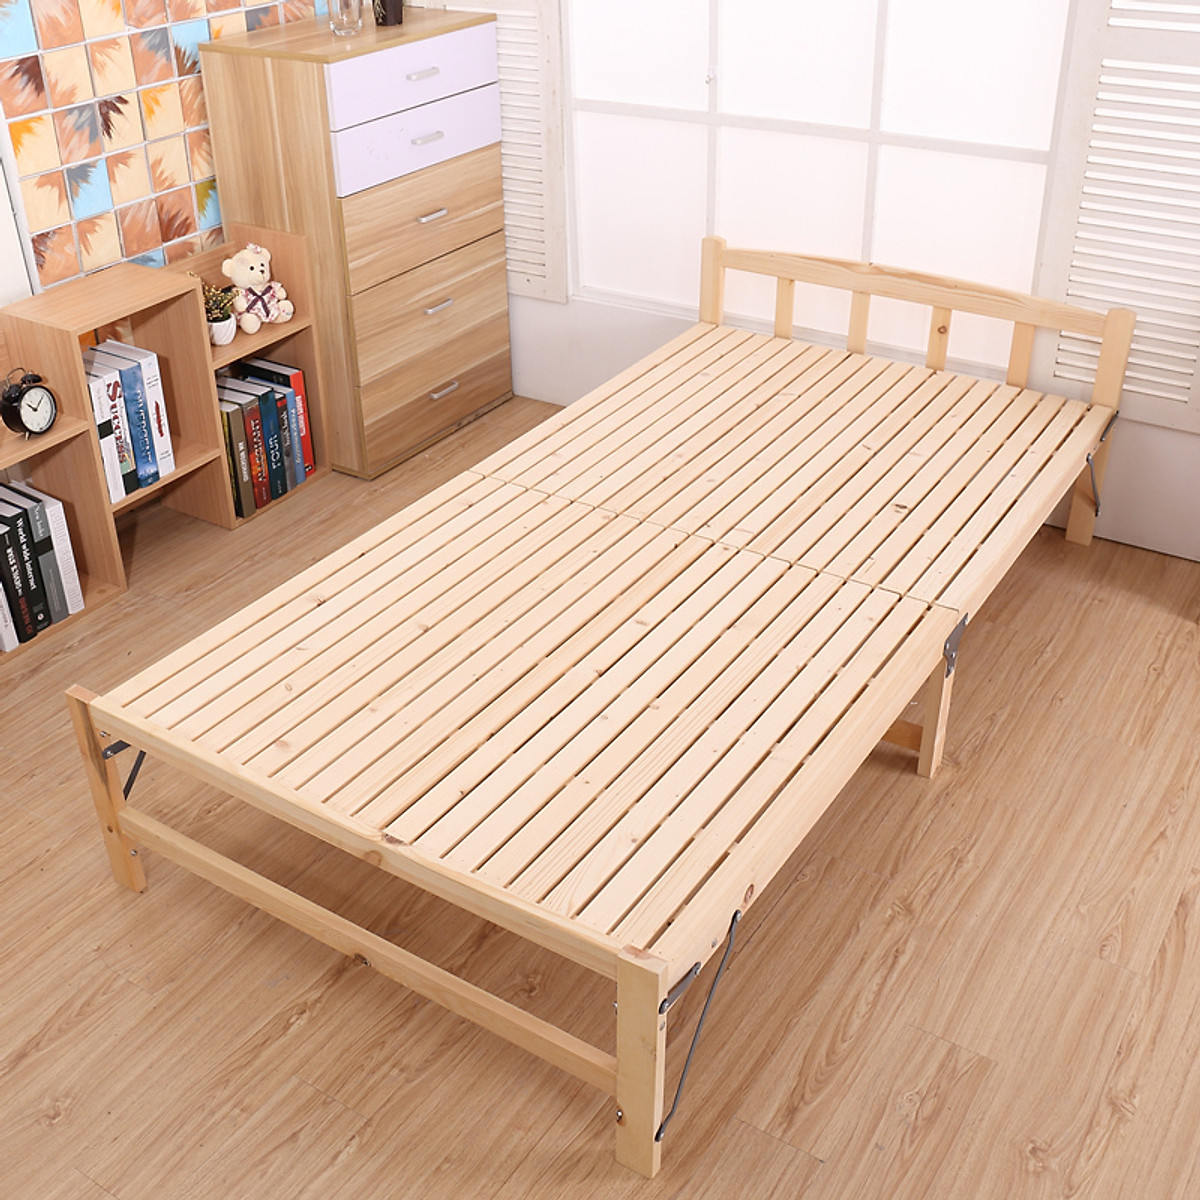 Chiếc giường với thiết kế đơn giản được làm từ gỗ thông